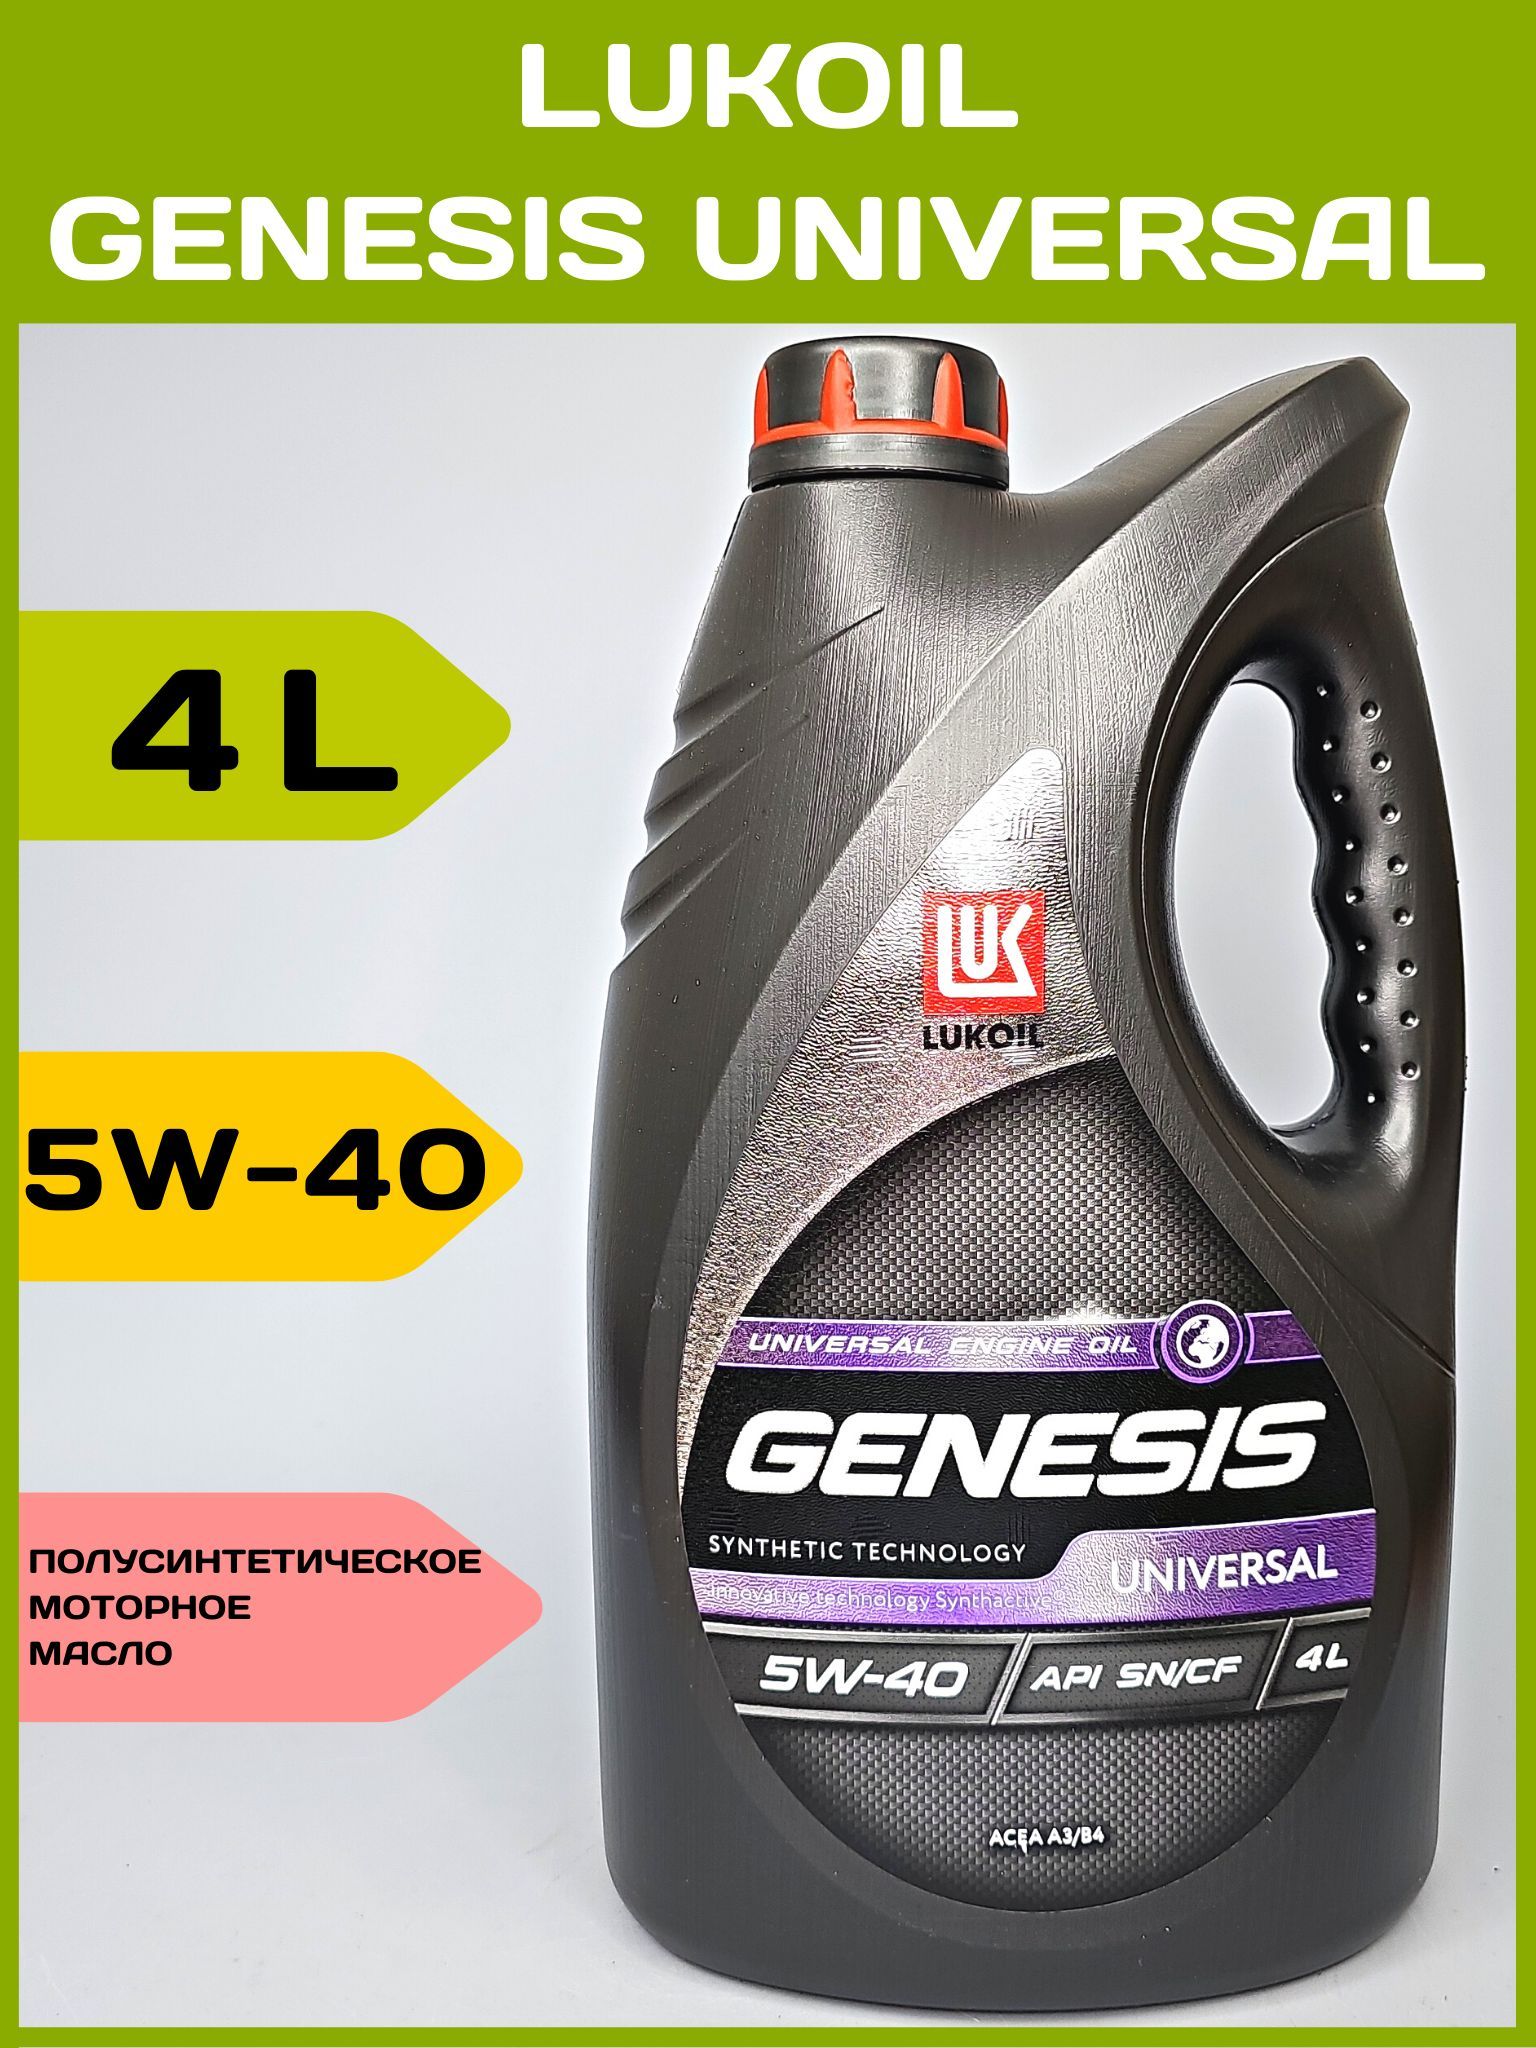 Лукойл 5 30 отзывы. Лукойл Genesis Universal 5w40. Lukoil Genesis Universal 5w-40 4л. 3148631 Лукойл. Генезис универсал 5-40.